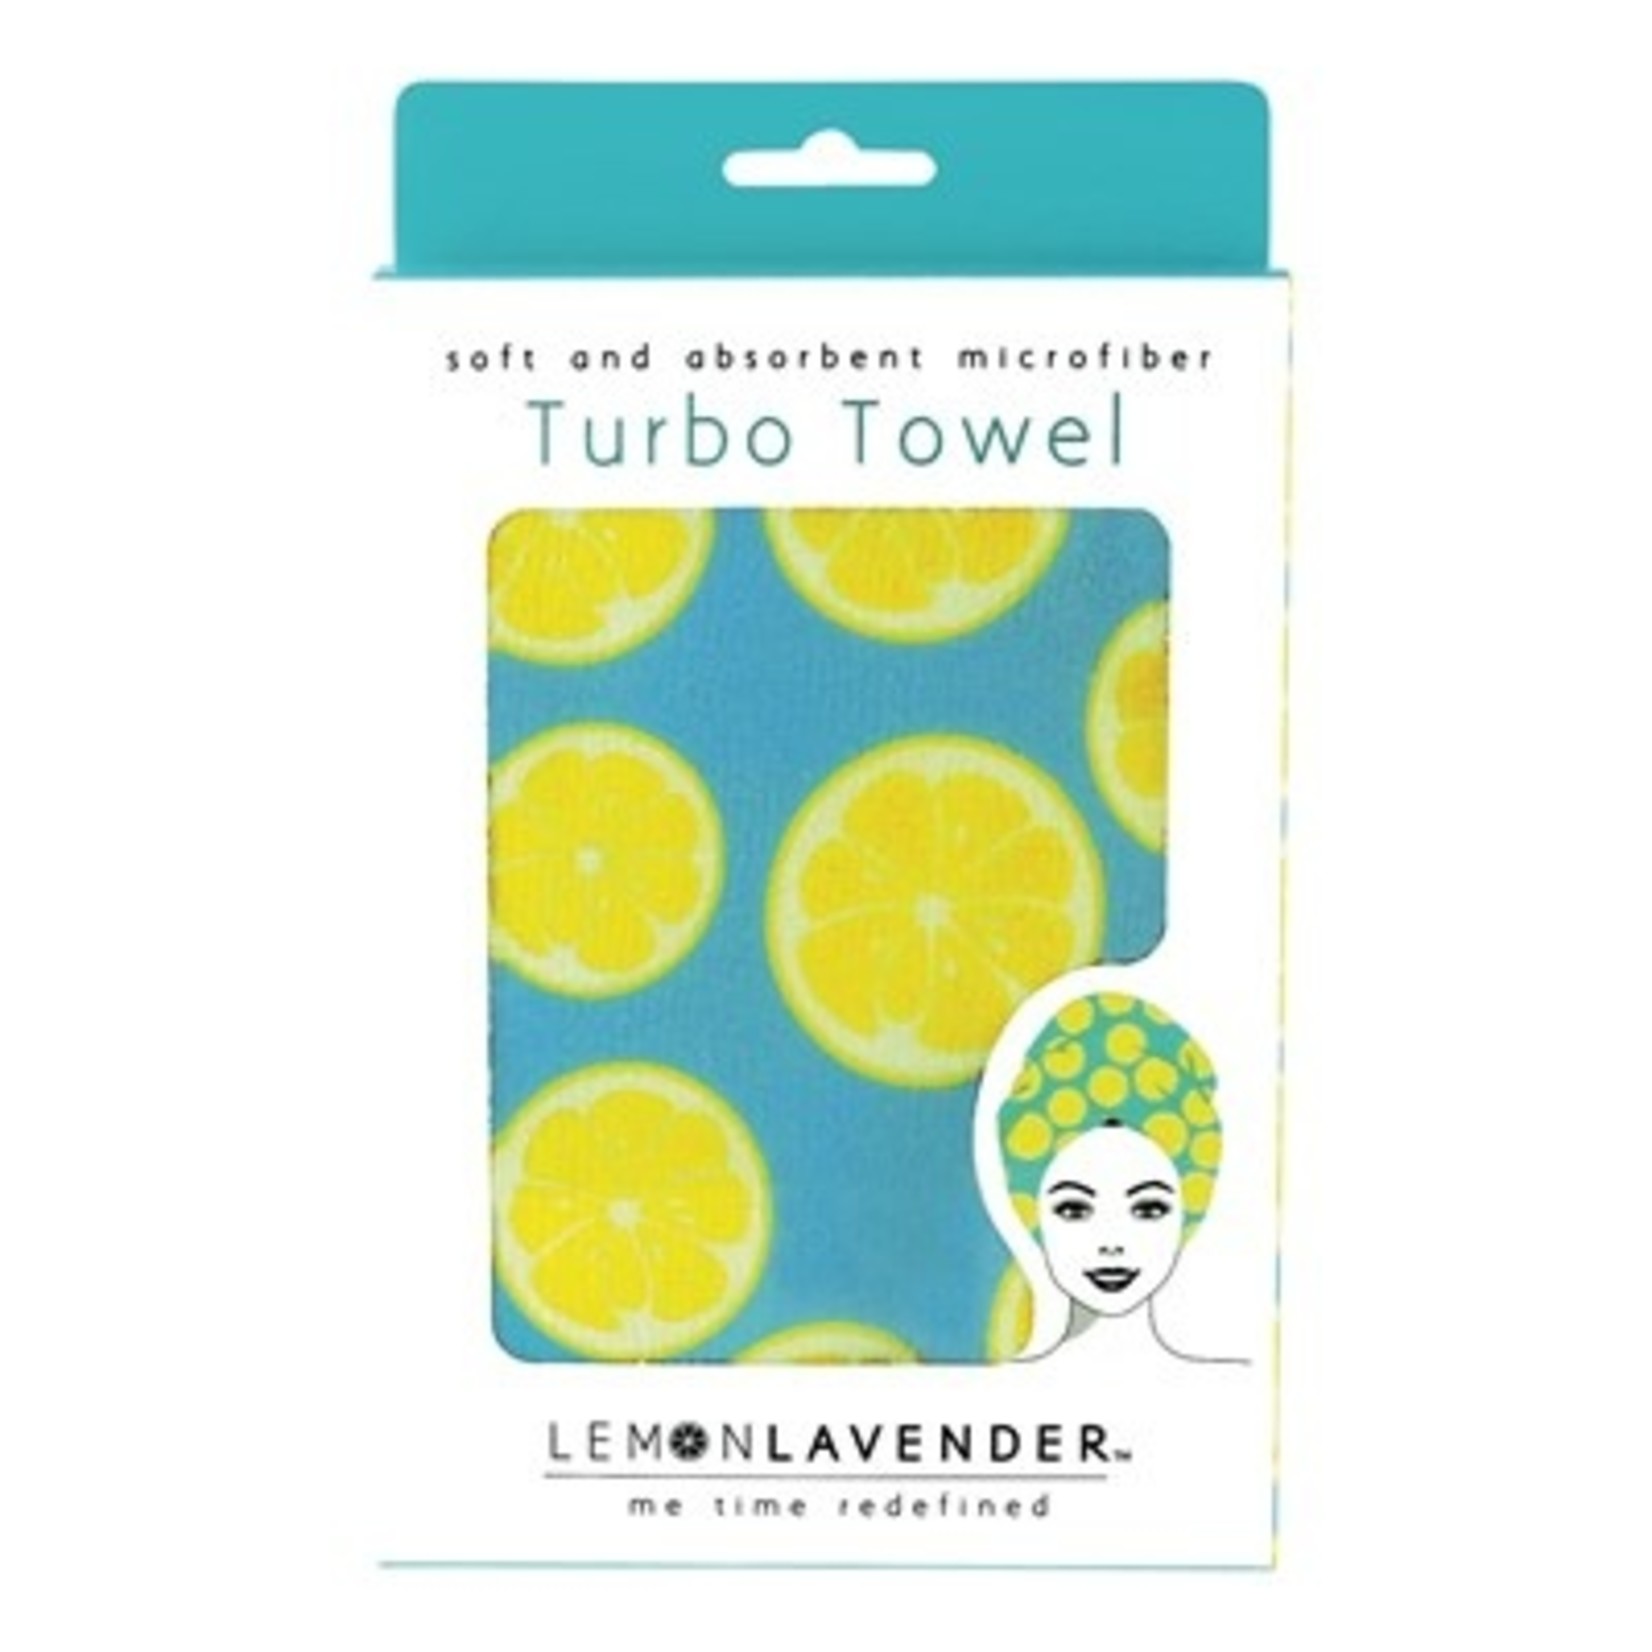 DM Merchandising Lemon Lavender Turbo Towel